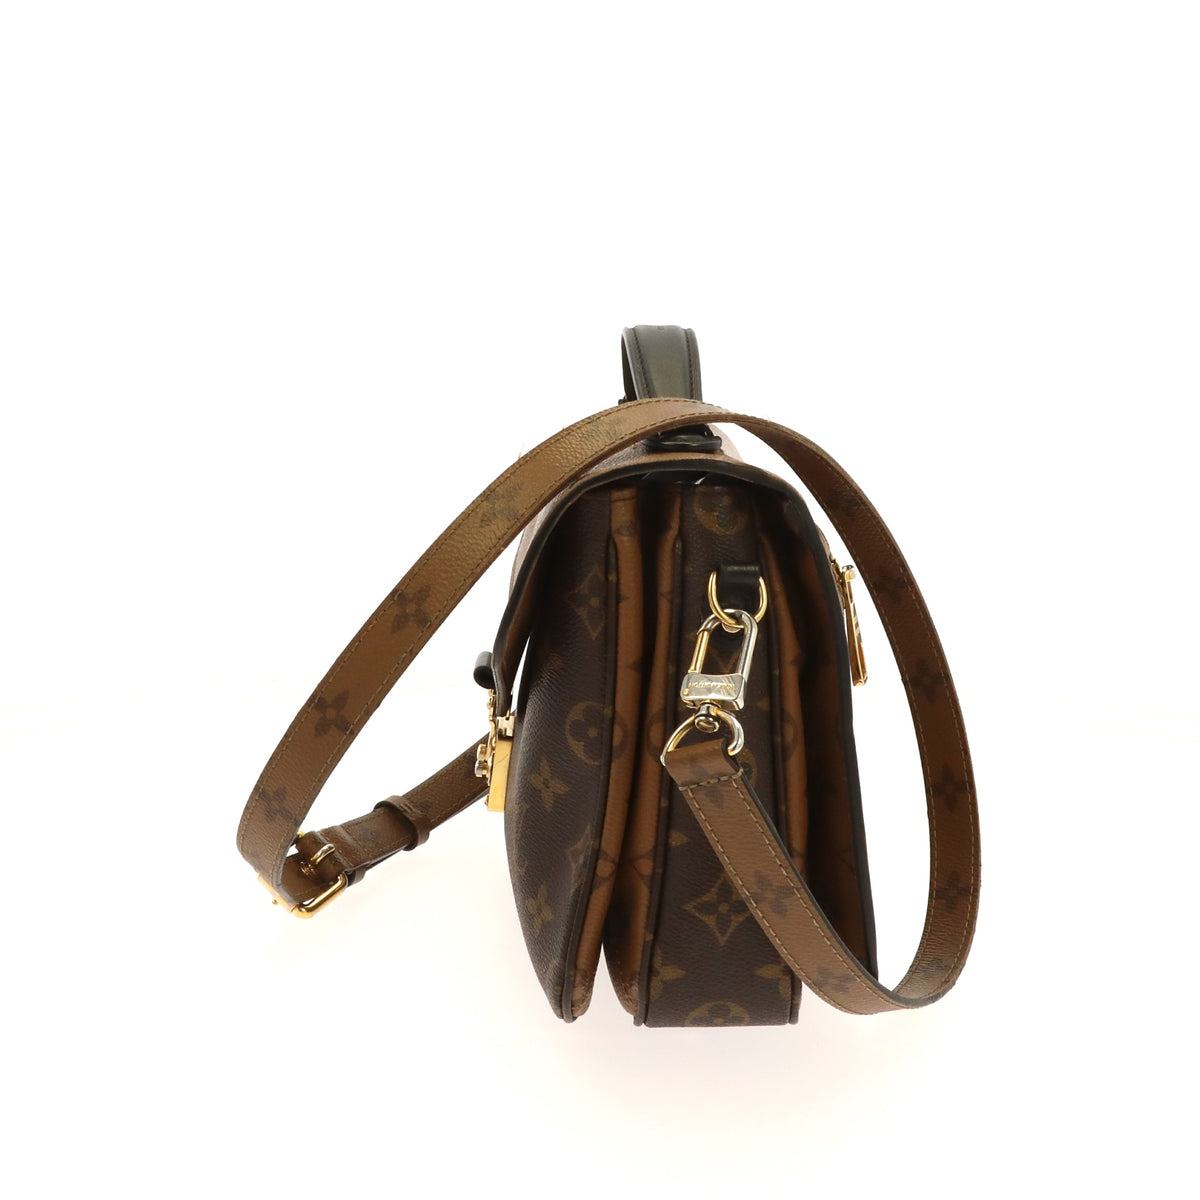 Louis Vuitton Pochette Metis 2018 Brown Monogram Canvas Shoulder Bag